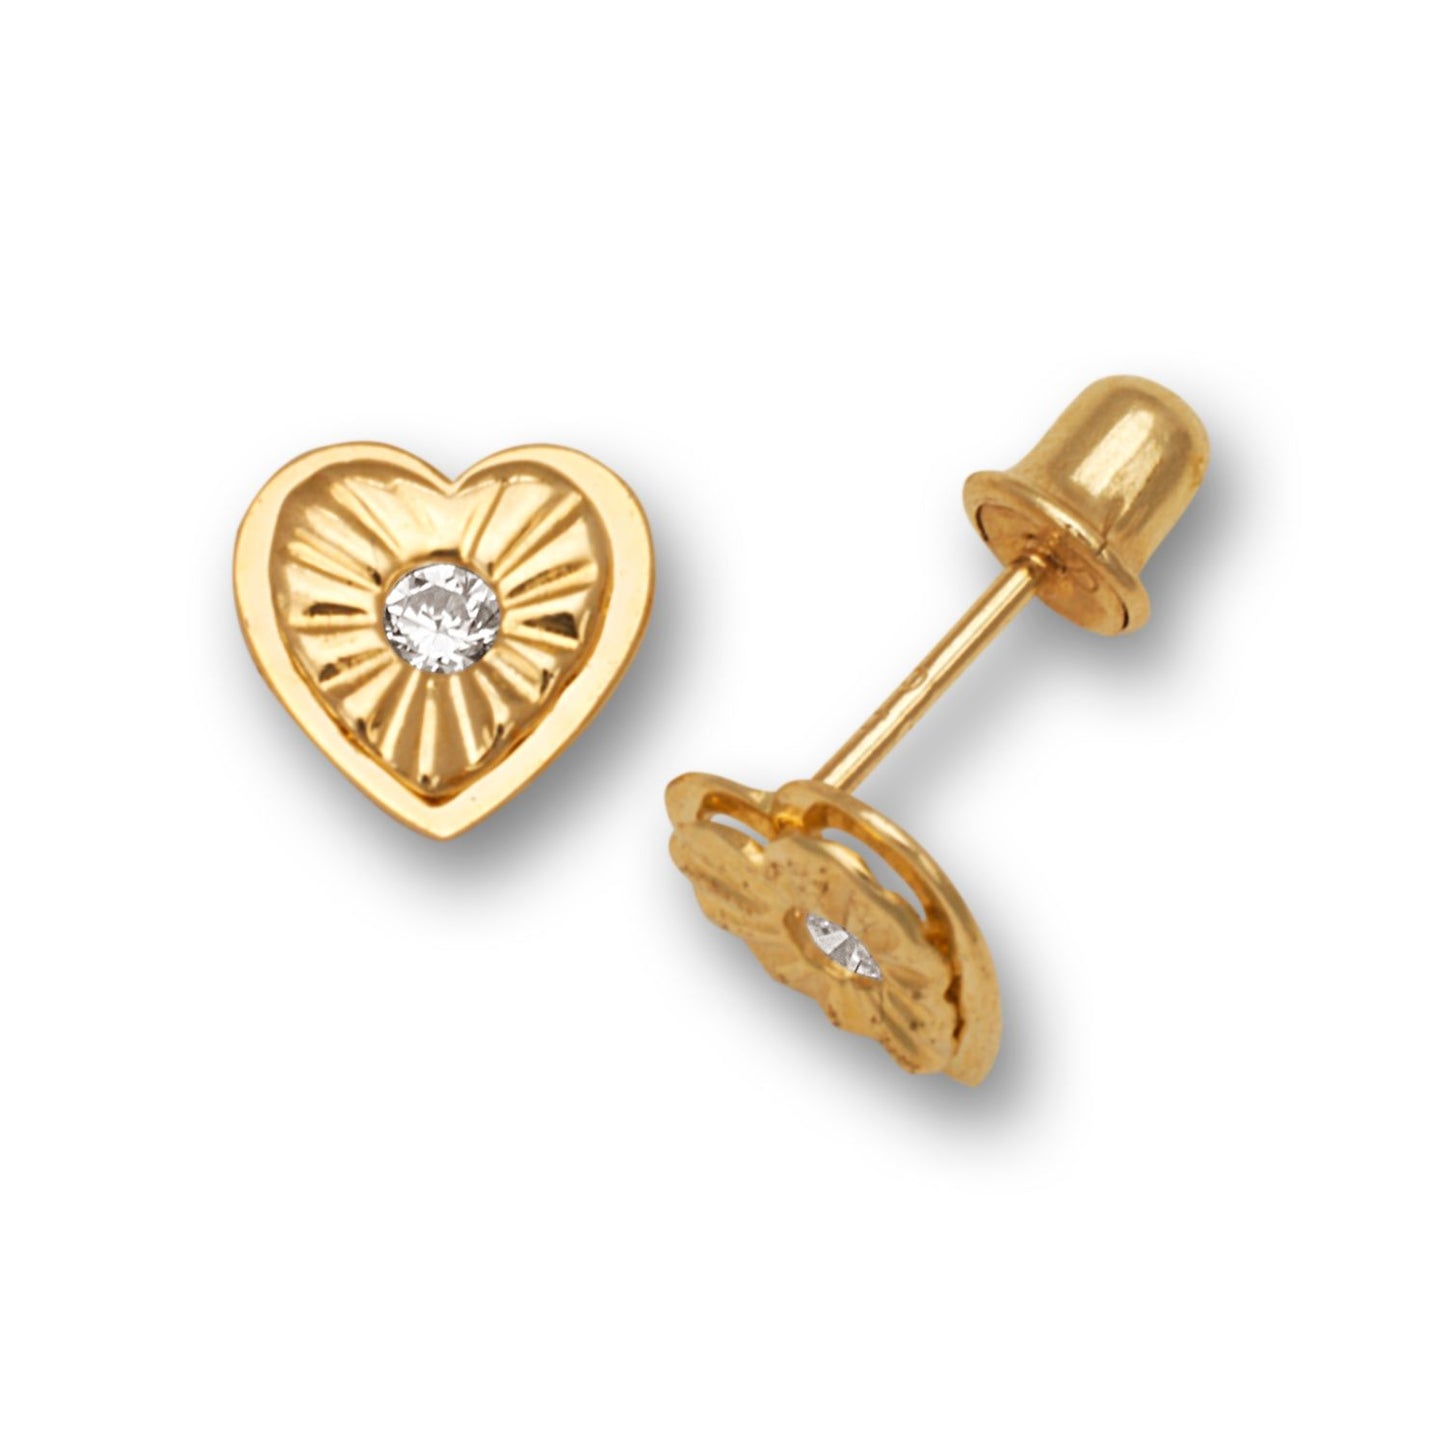 Solid Gold Stud Heart Zircon Earrings 925 Sterling Silver Rhodium Plated Heart Stud Earring